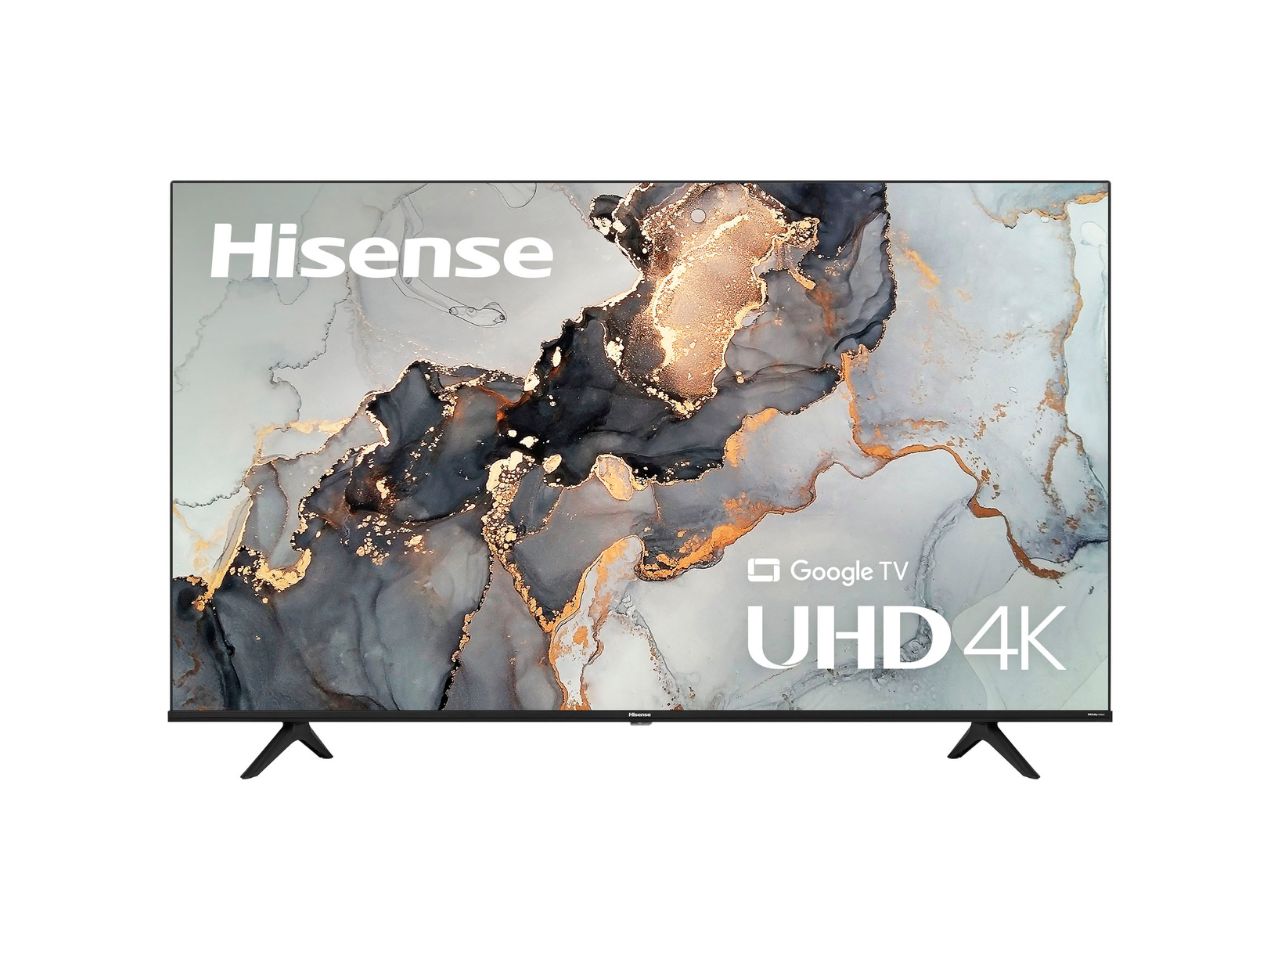 Hisense 55-inch 4K TV on white background.